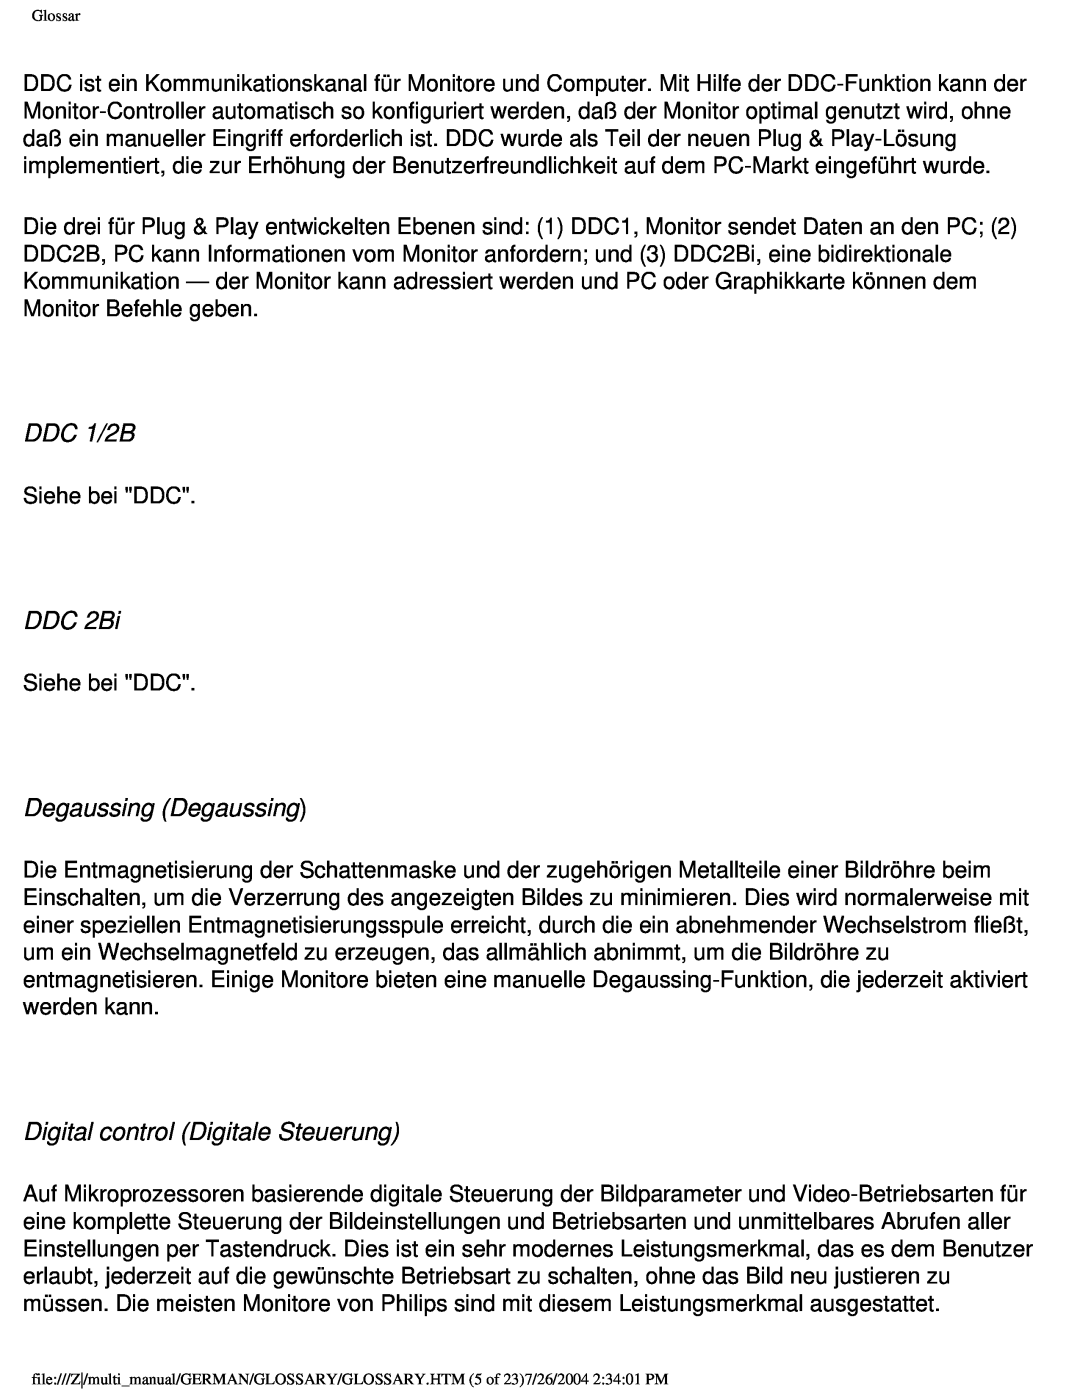 Philips 107X2 user manual DDC 1/2B, DDC 2Bi, Degaussing Degaussing, Digital control Digitale Steuerung 